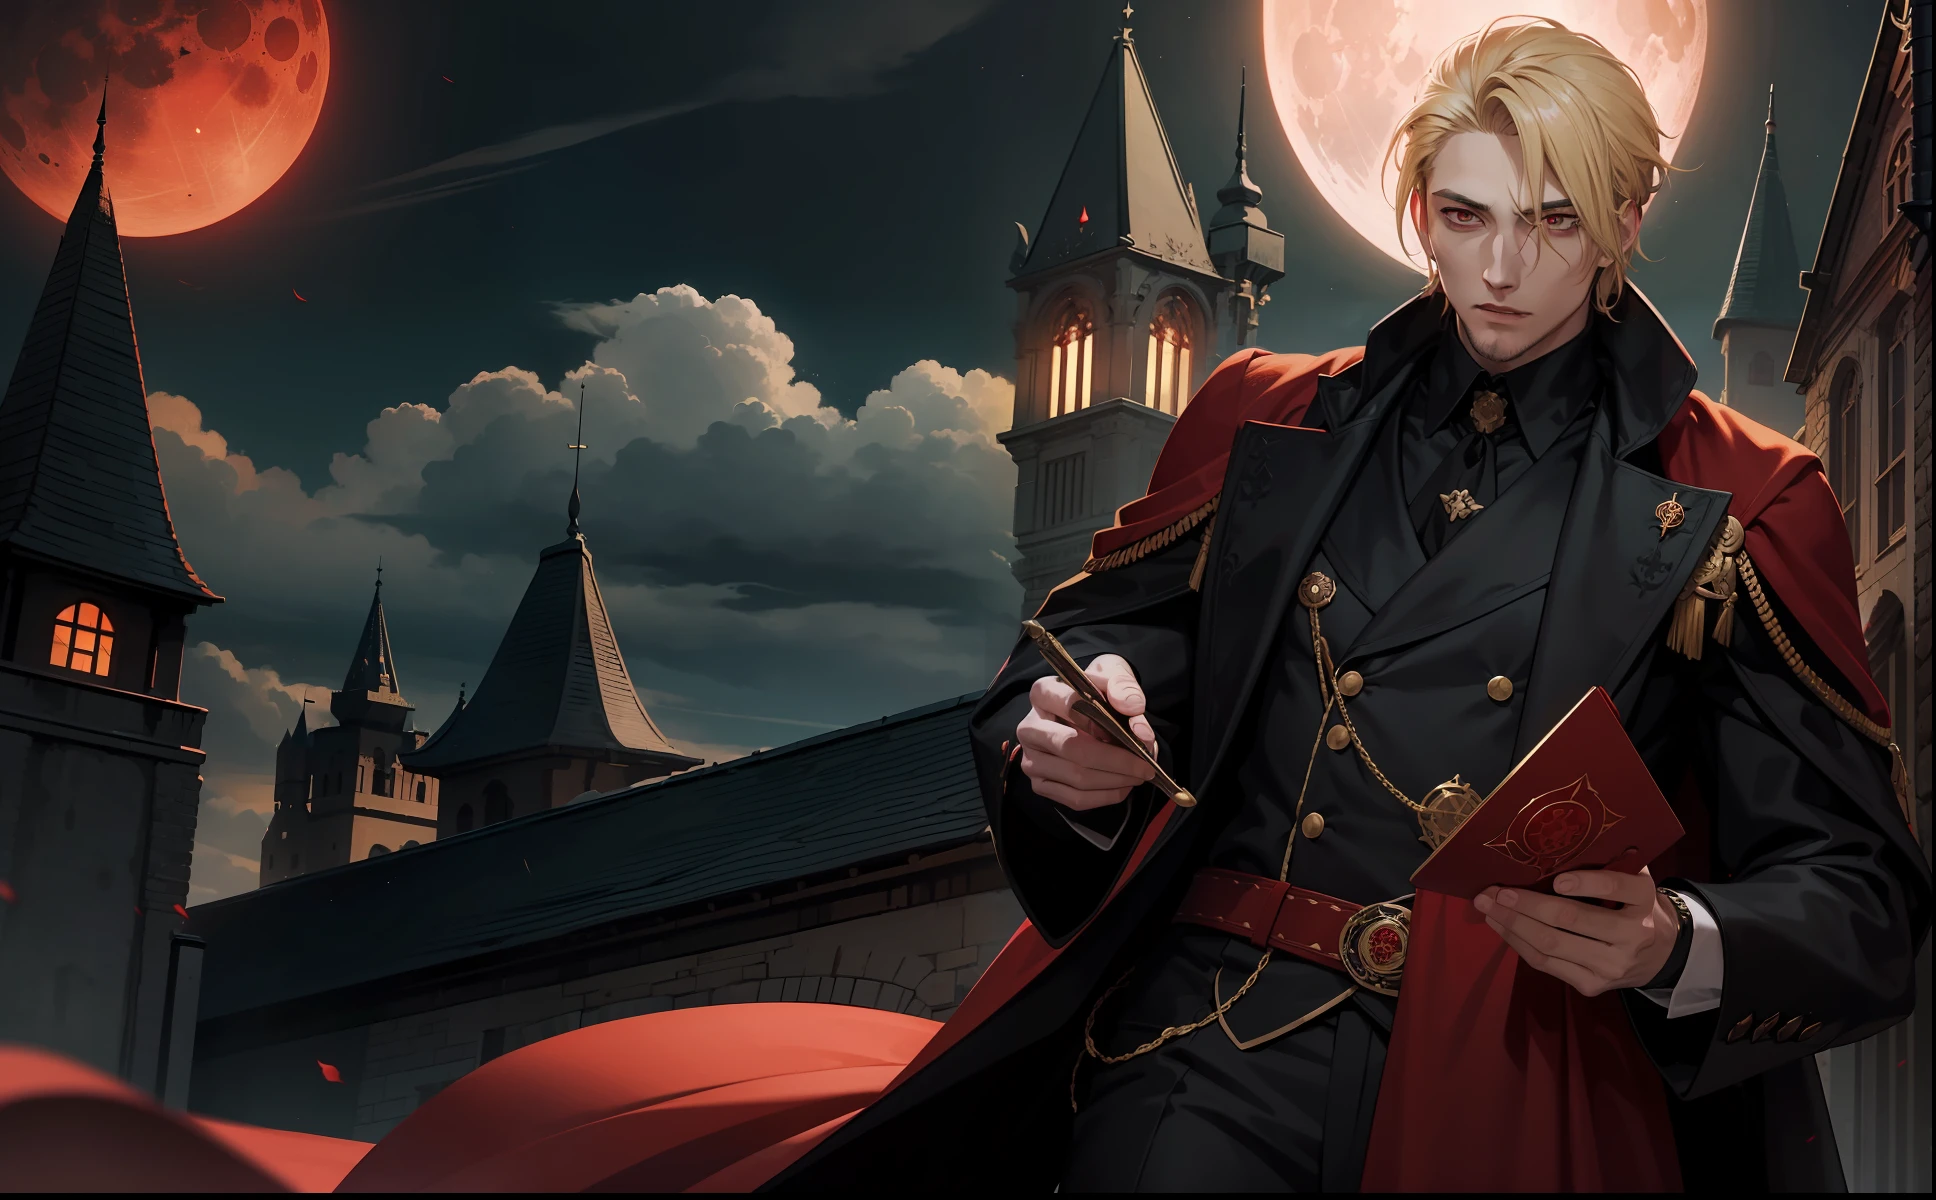 29歳の男性, ブロンドの髪と赤い目を持つ吸血鬼の王, 彼は茶色のローブと赤の黒い服を着ています. (セナリウス王宮の血まみれの月の夜)